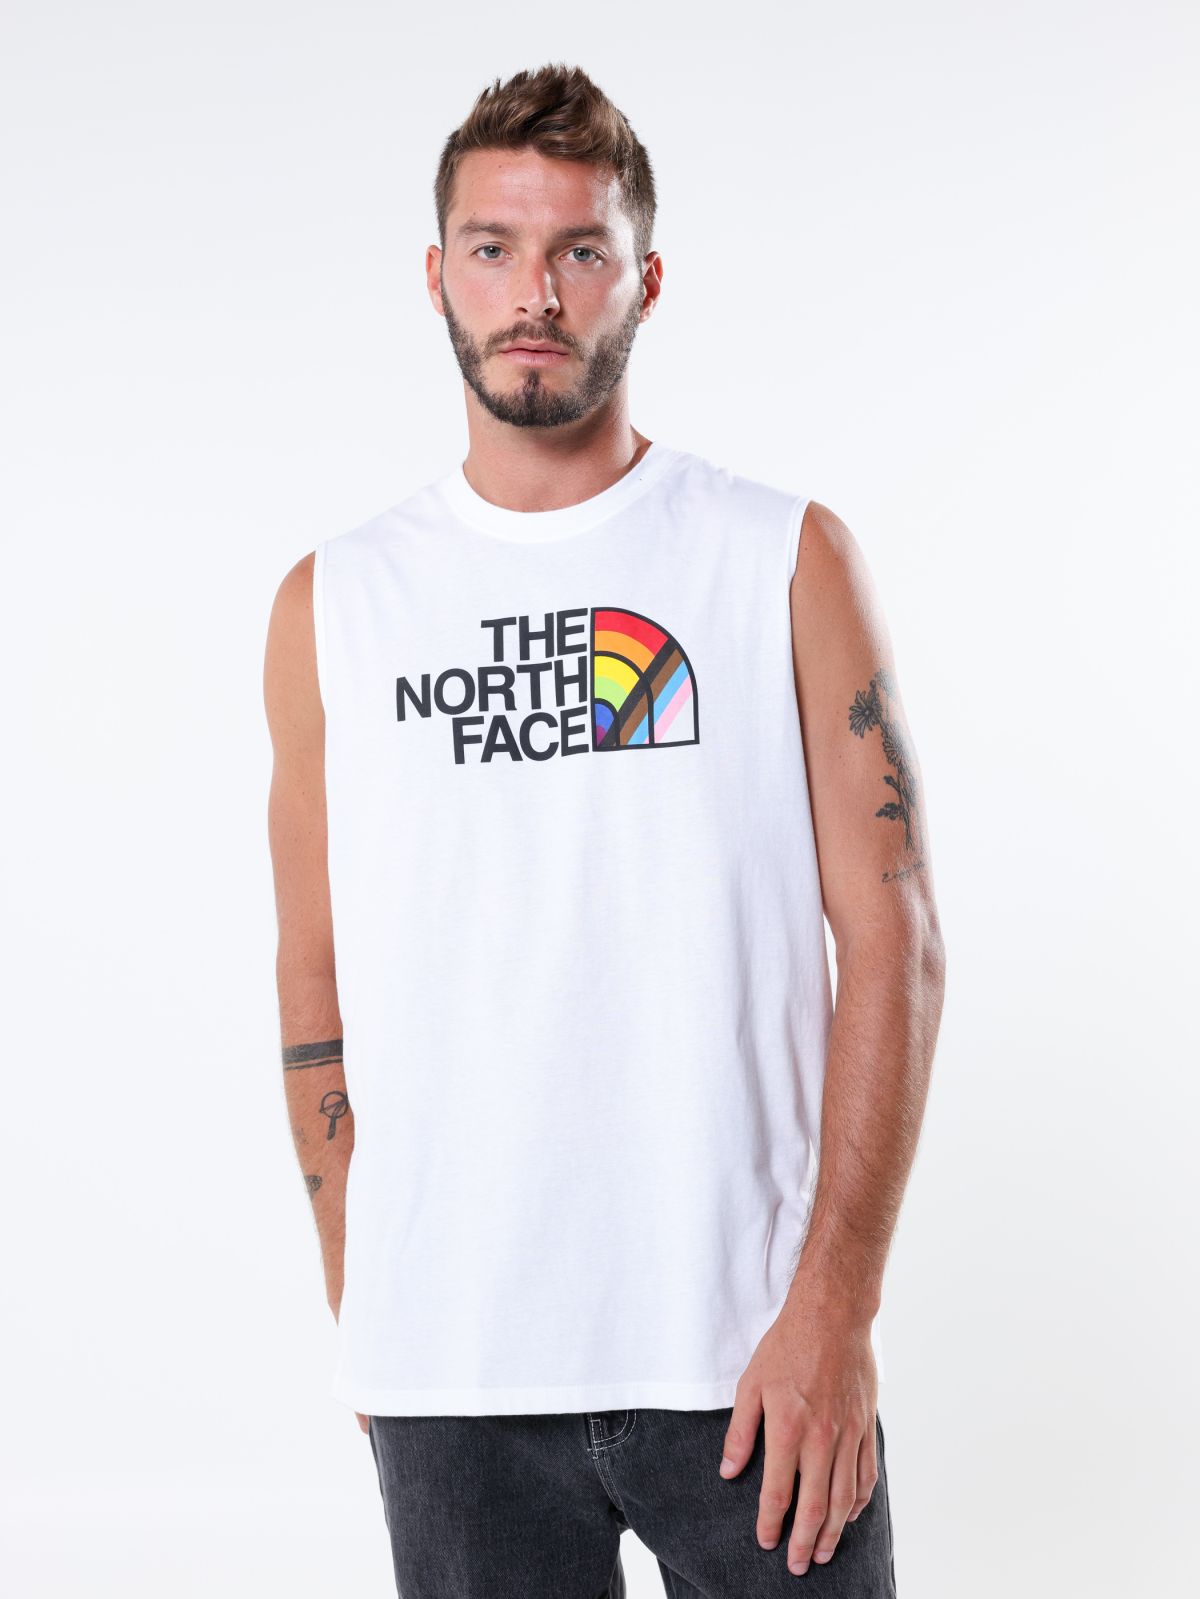  גופייה עם לוגו Pride של THE NORTH FACE